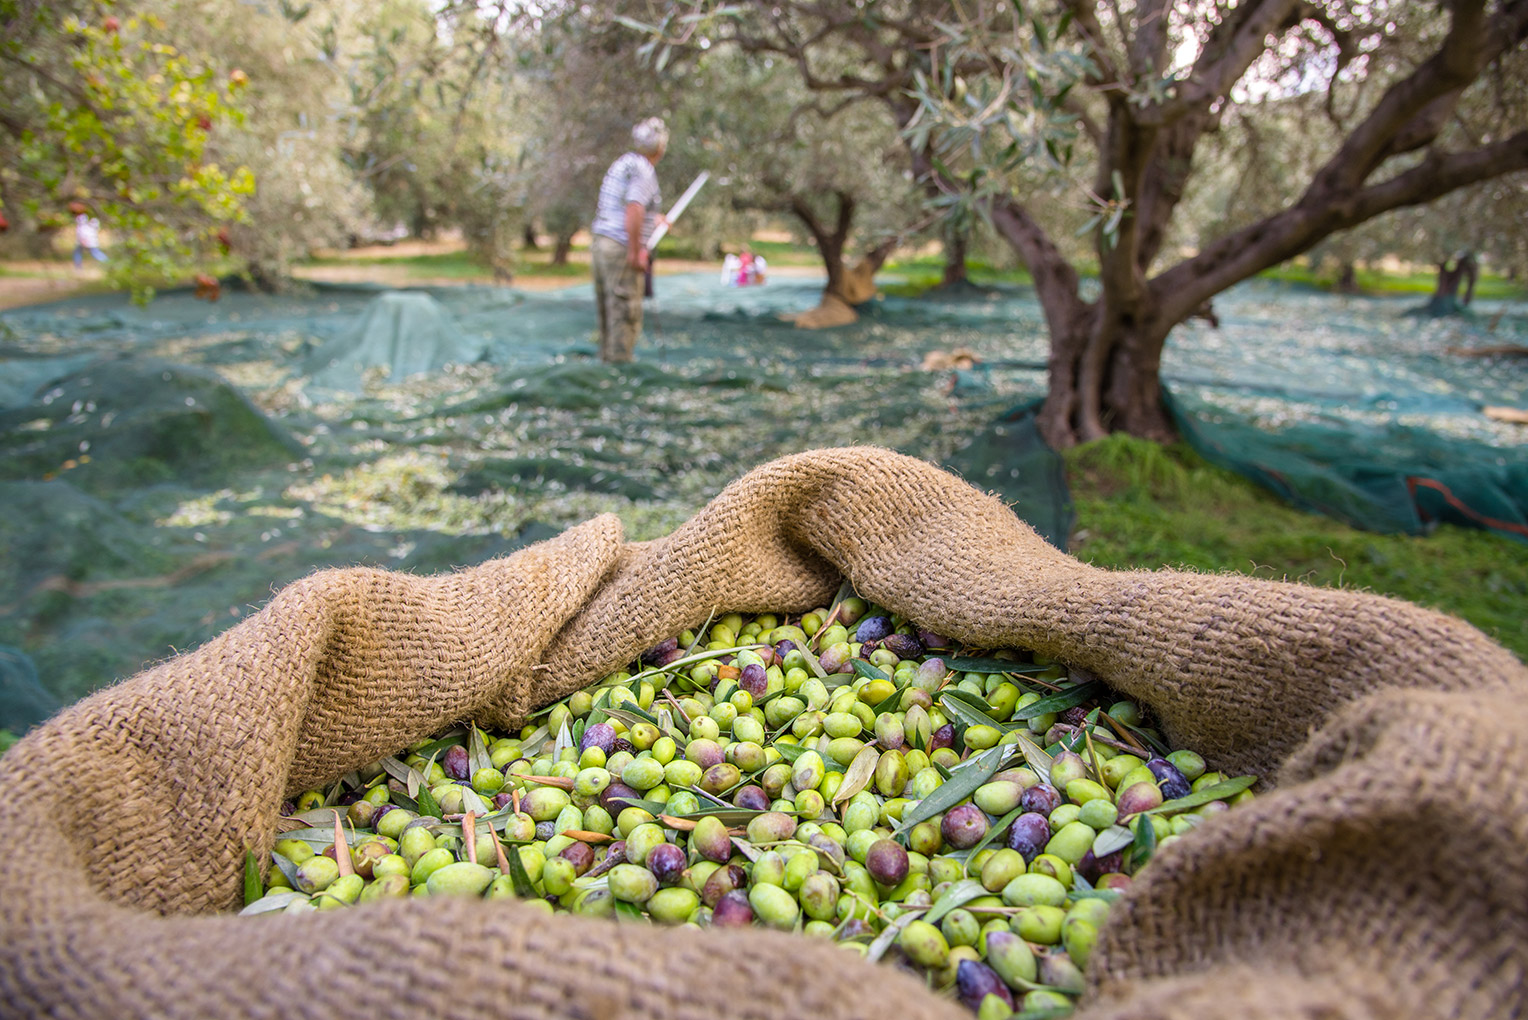 Autumn in Zadar region - olive harvest